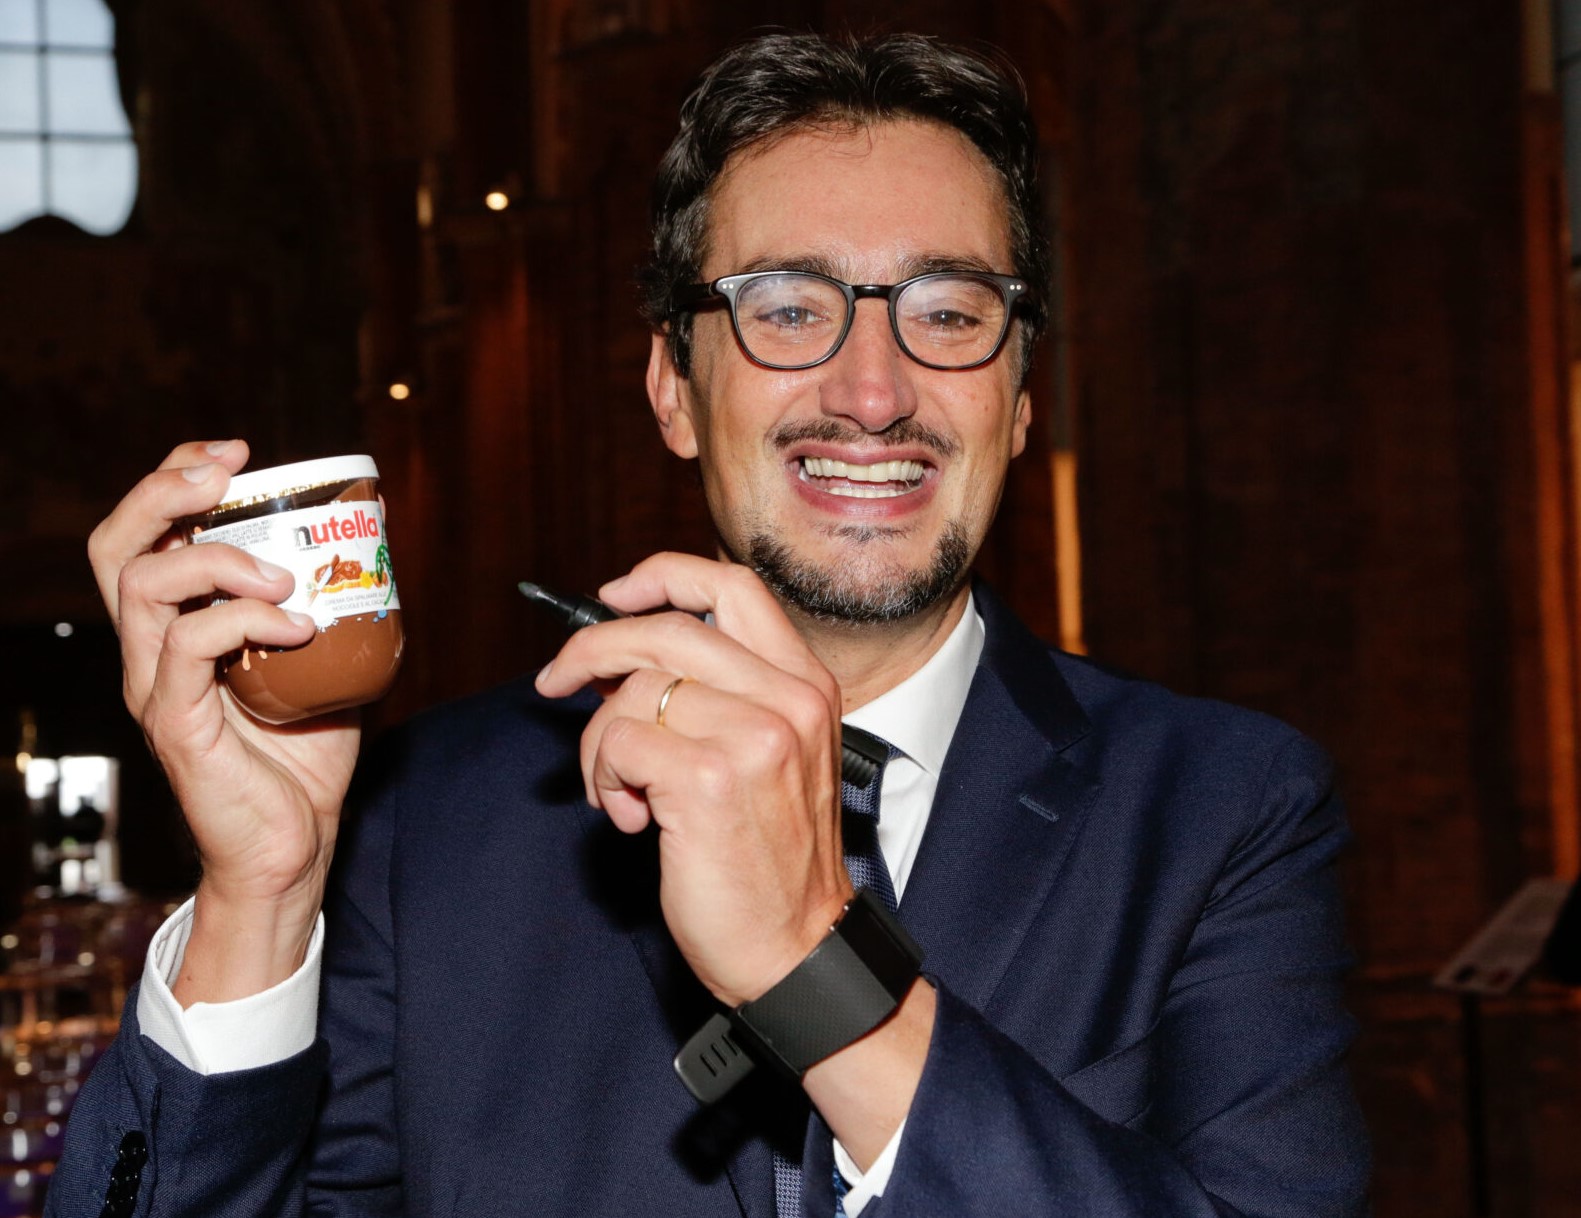 Giovanni Ferrero, per Forbes l’uomo più ricco d’Europa nel food and beverage